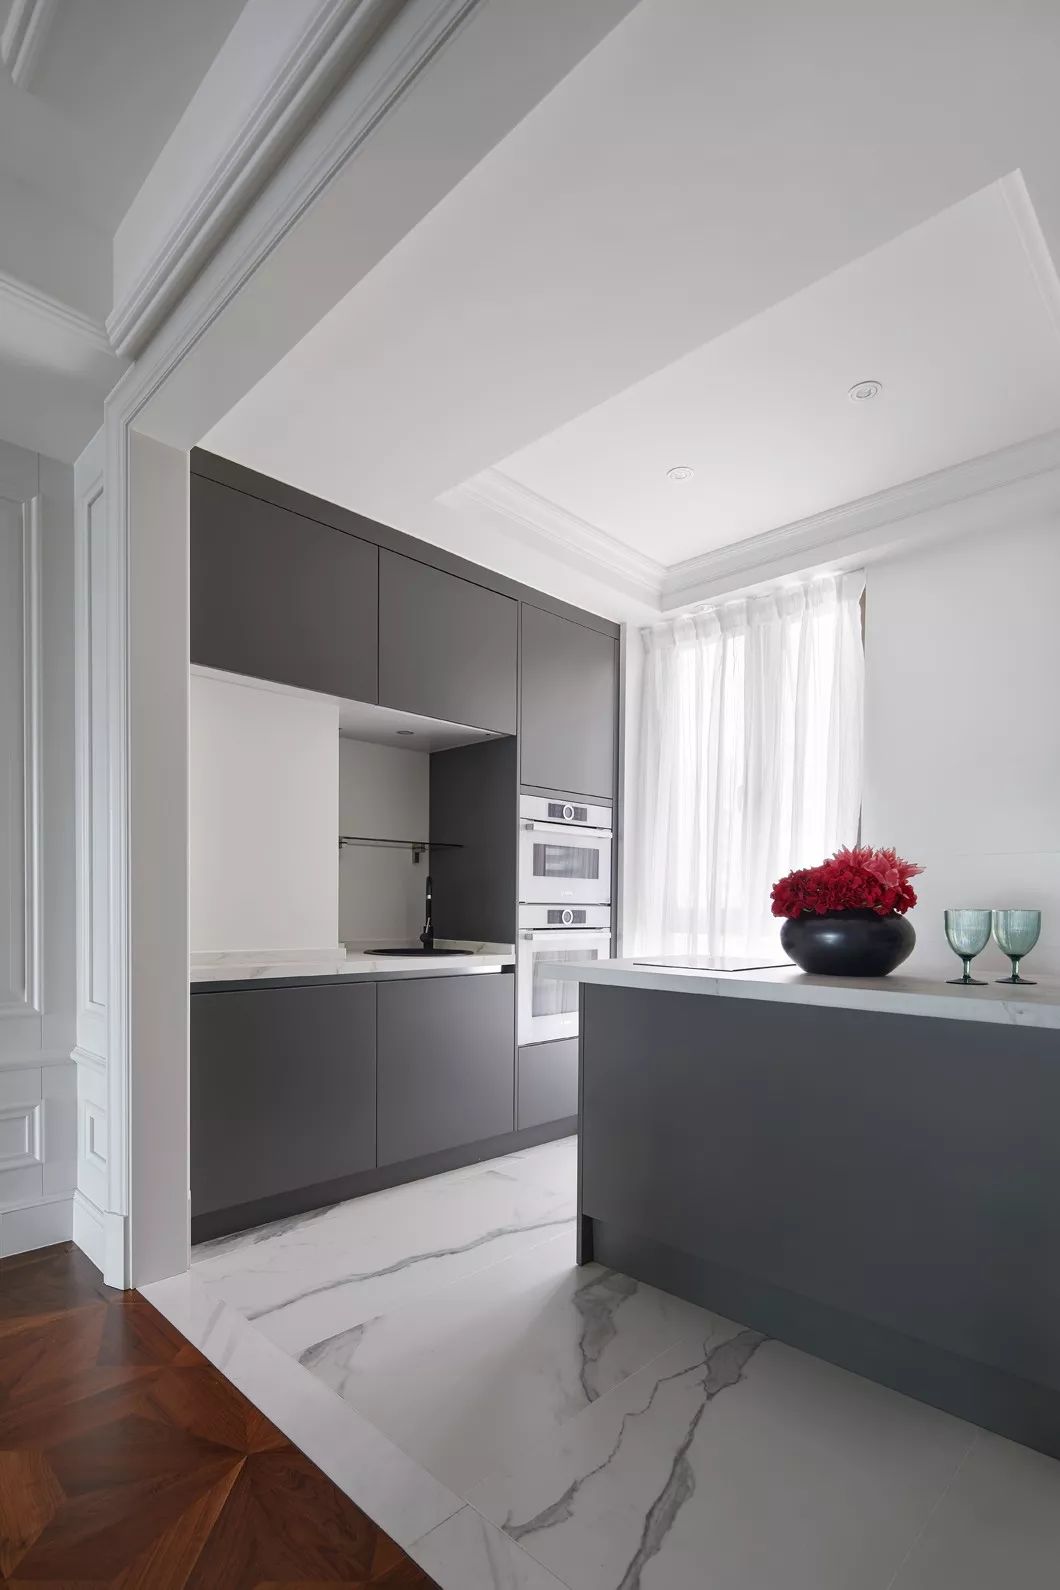 美式现代风格家装设计室内装修效果图-厨房